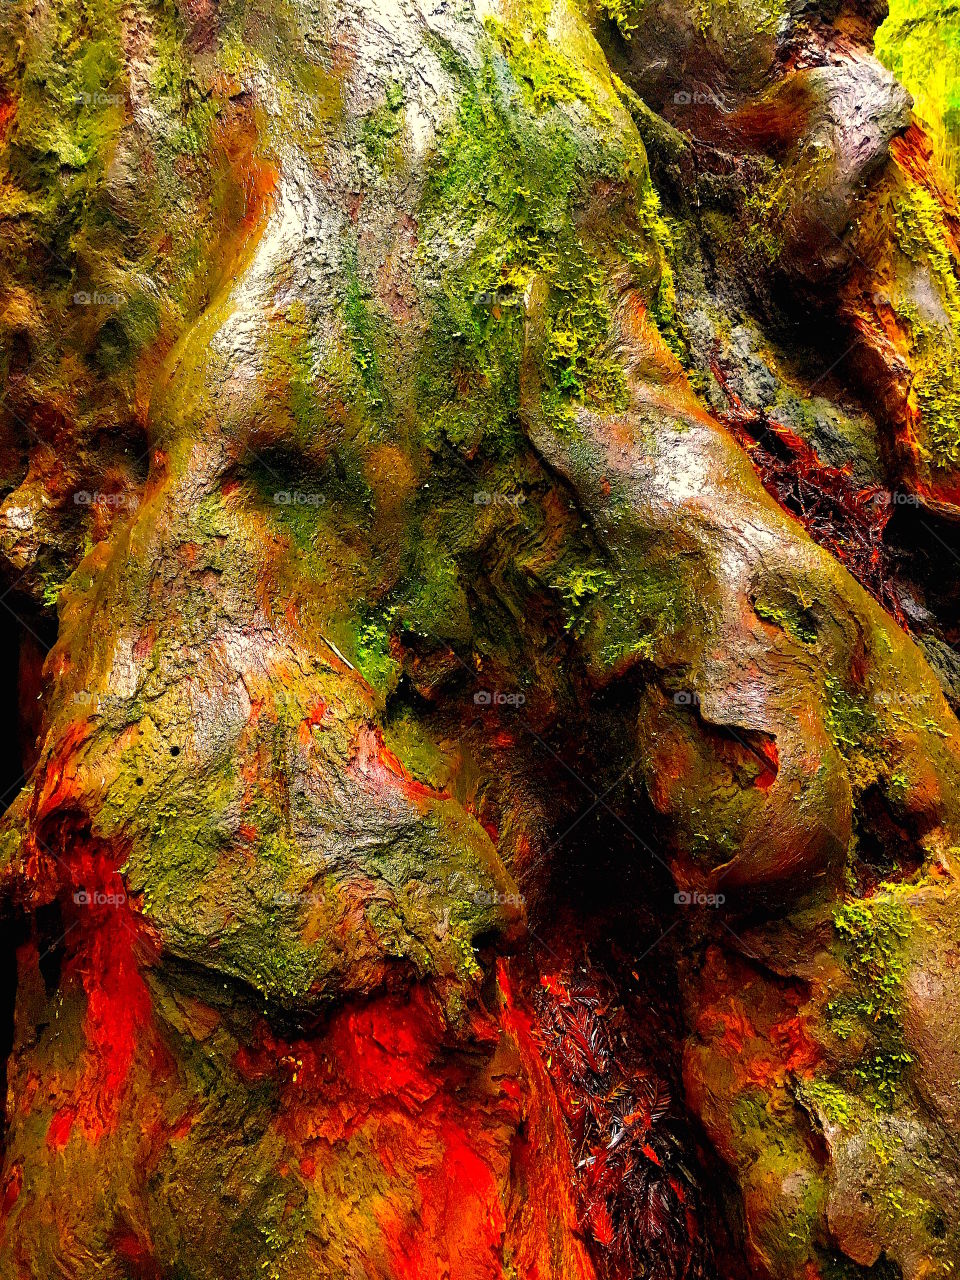 Redwoods bark close up 